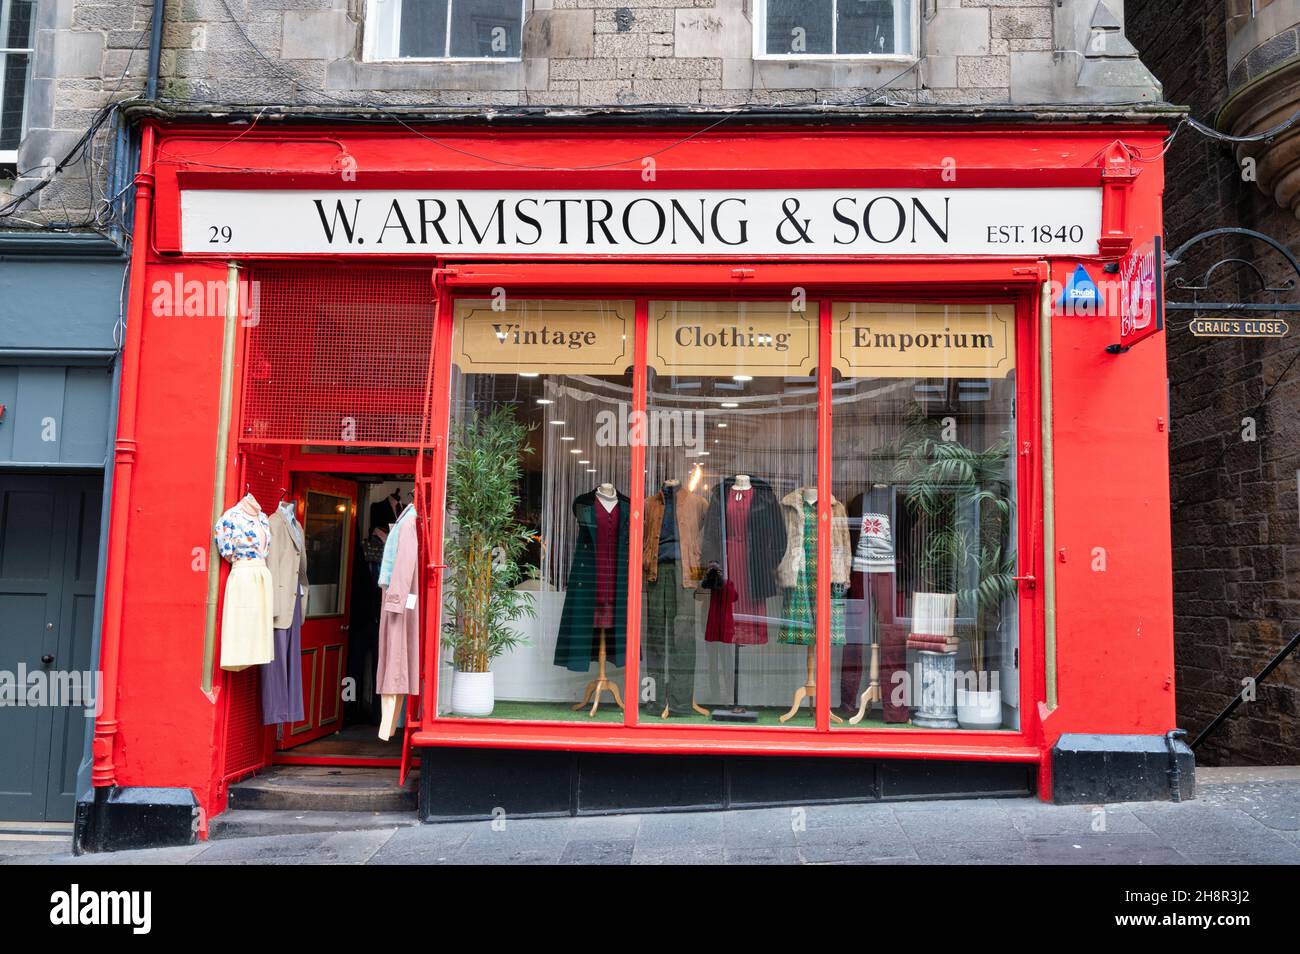 Edimburgo, Escocia- 20 de noviembre de 2021: El frente de la tienda de ropa de la época W Armstrong y Son en Edimburgo. Foto de stock